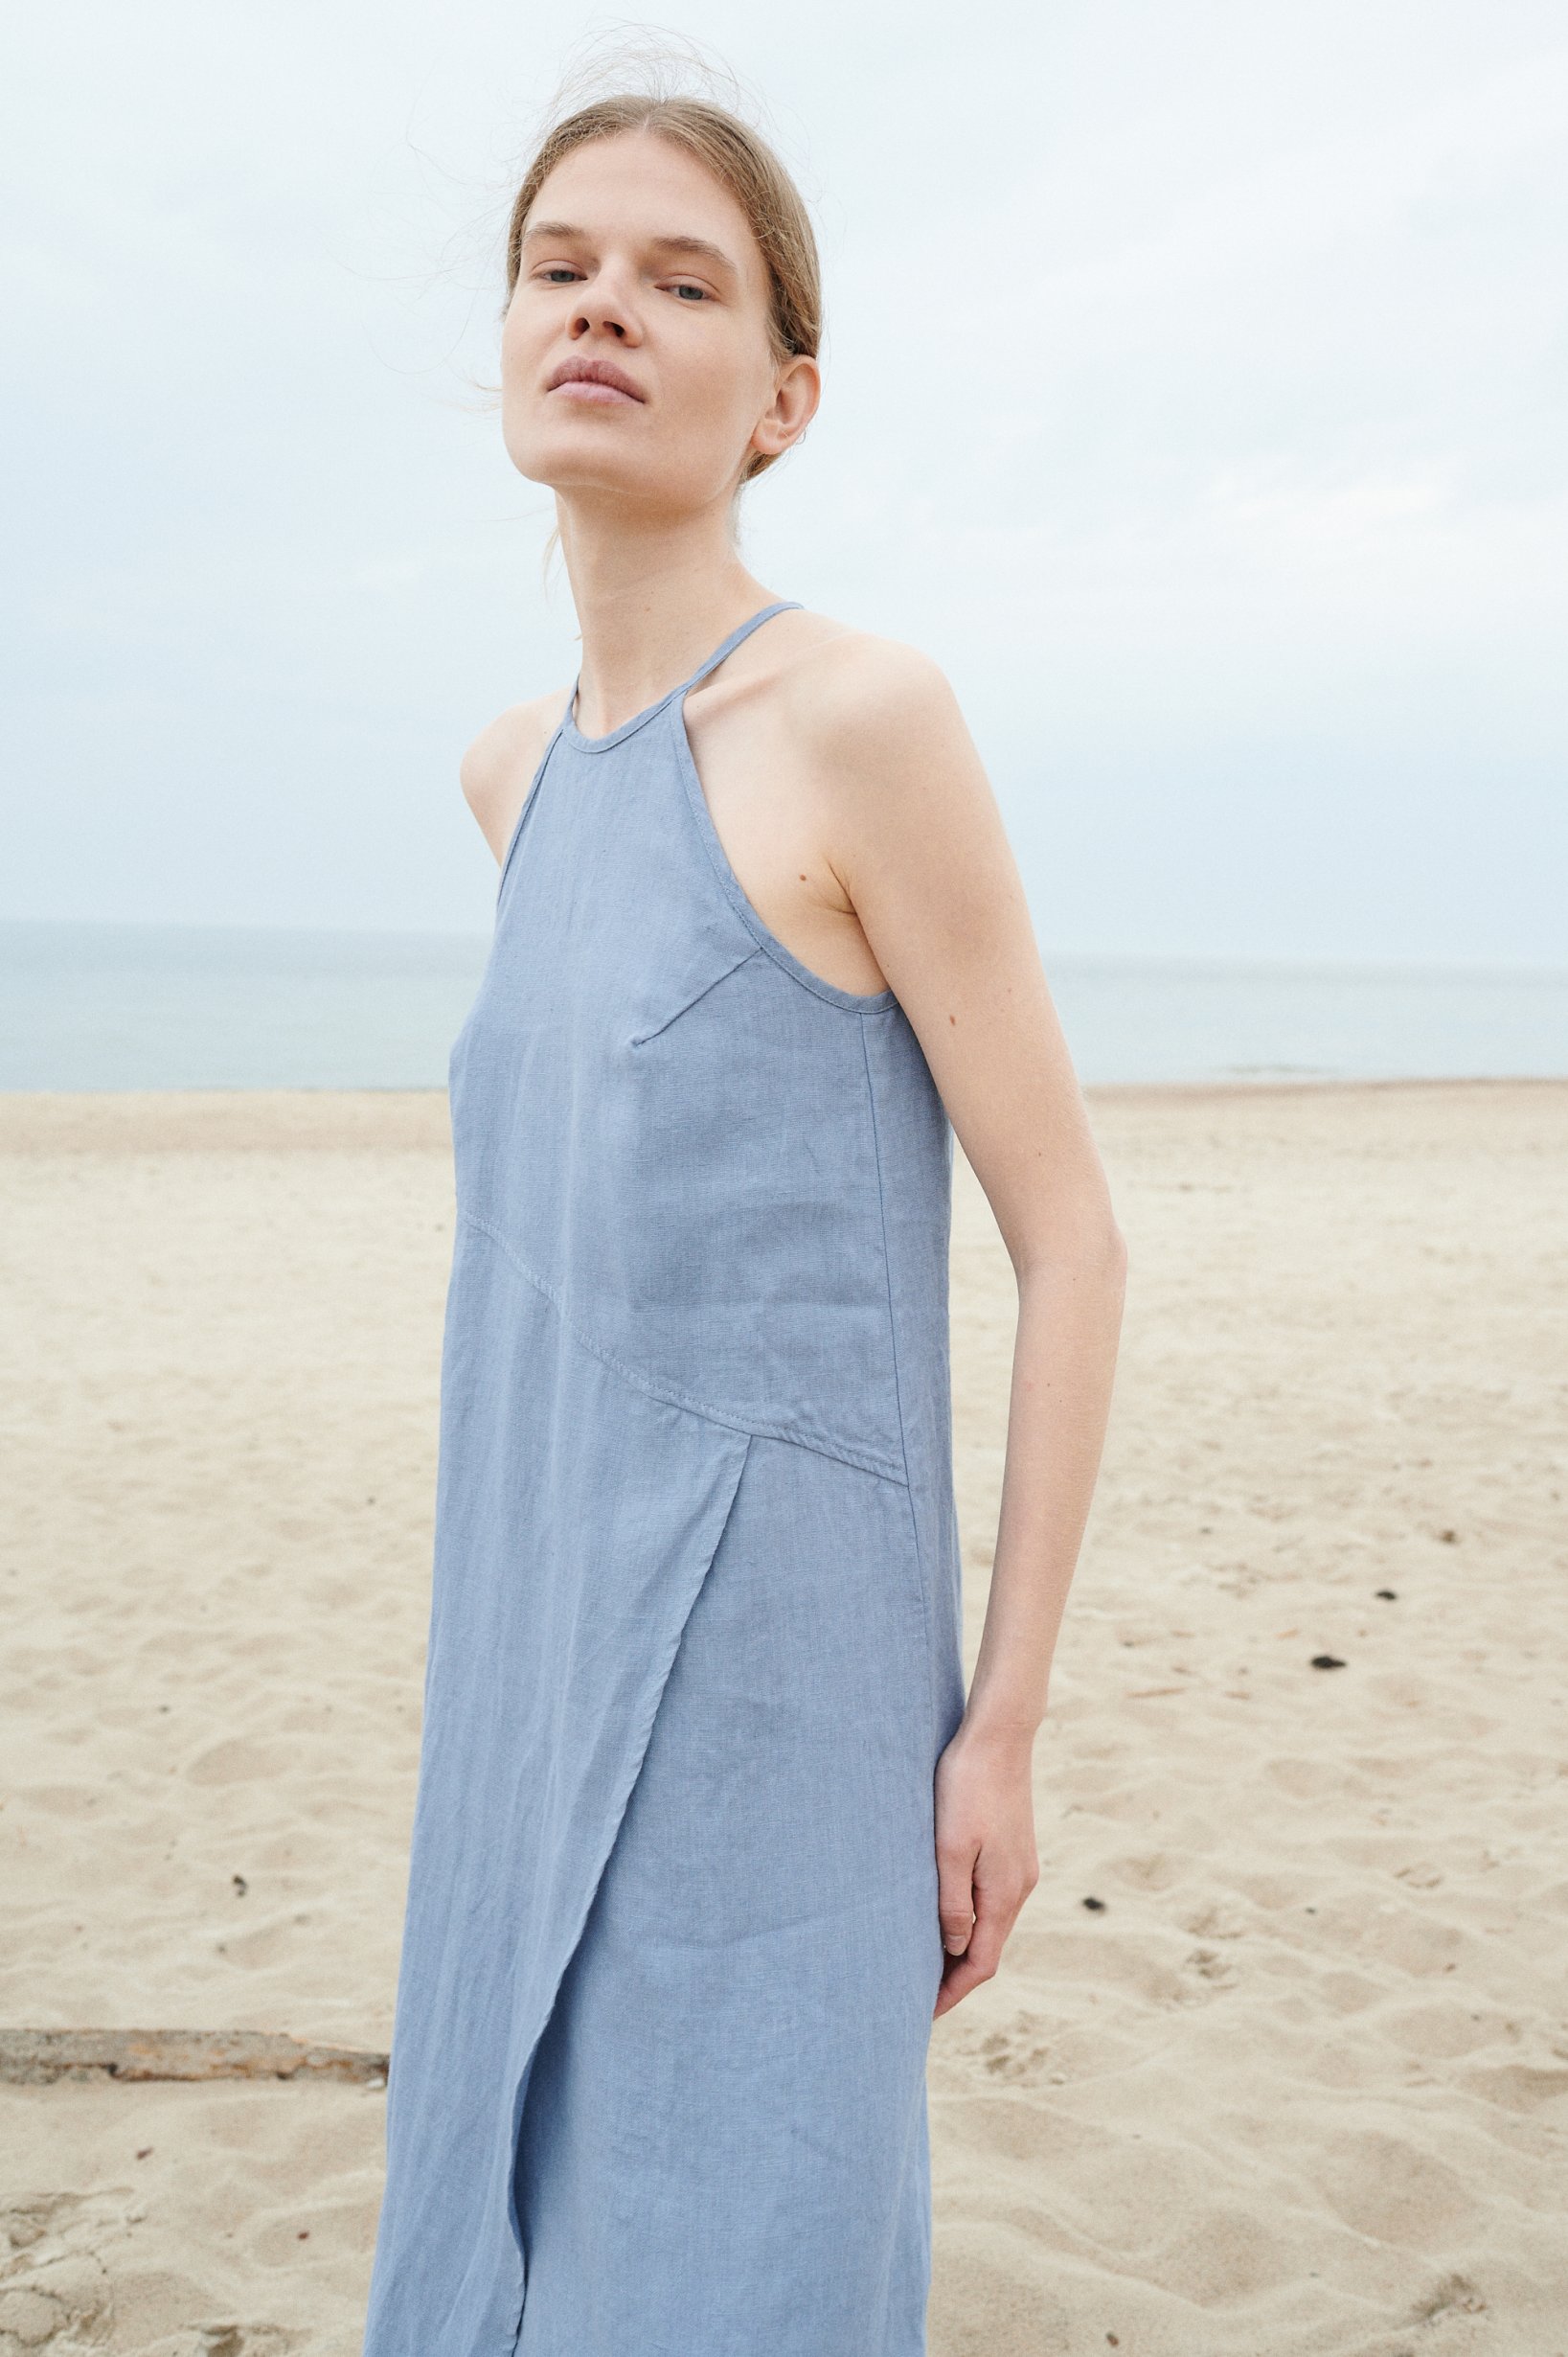 A light blue sleeveless linen dress with an an asymmetrical seam